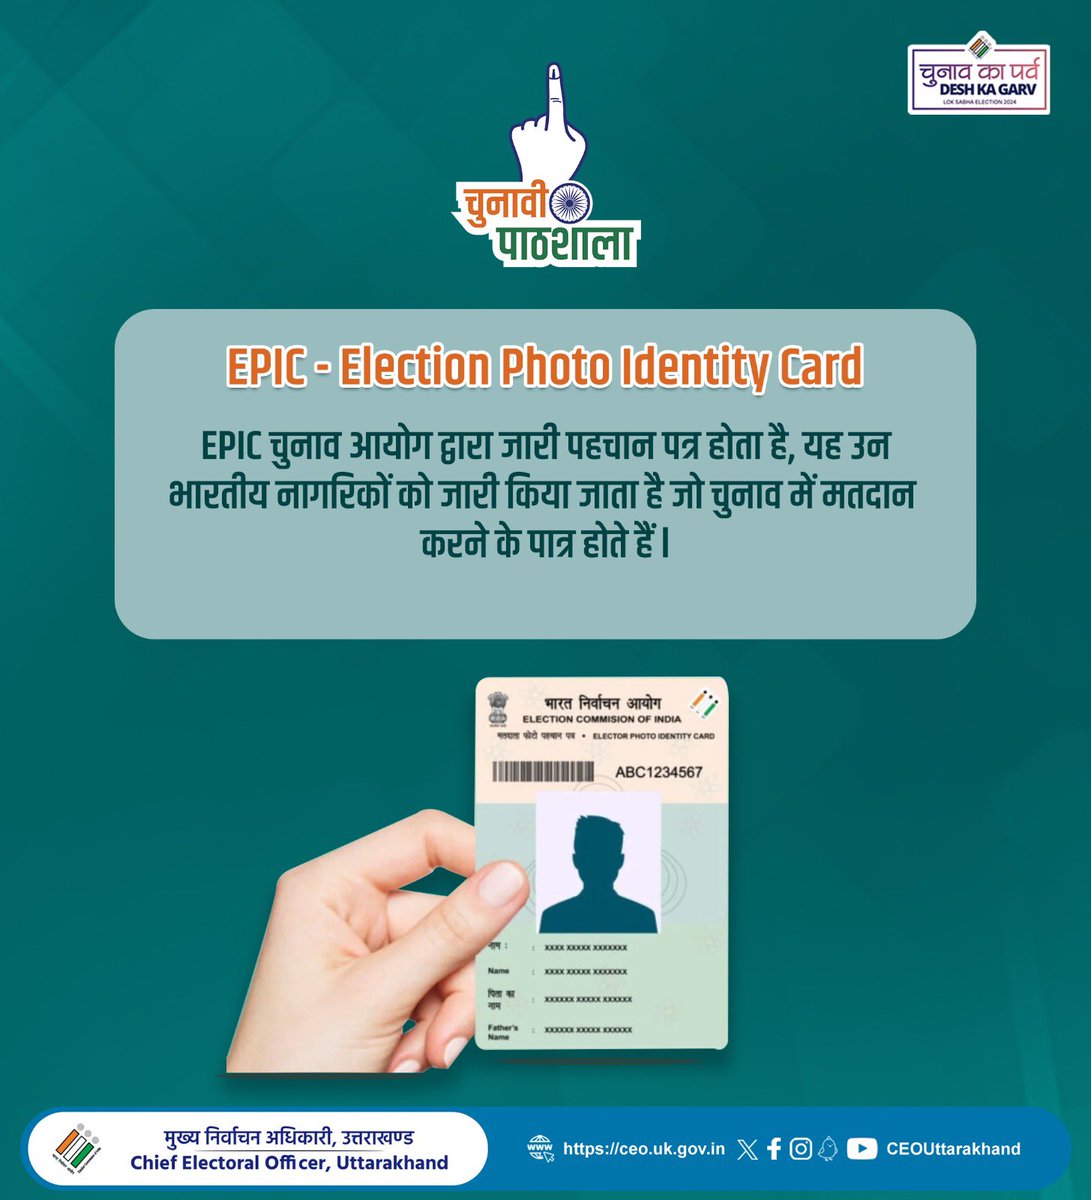 EPIC - Election Photo Identity Card EPIC यह आयोग द्वारा उन भारतीय नागरिकों को जारी किया जाता है जो चुनाव में मतदान करने के पात्र होते हैं l कार्ड में मतदाता का नाम, फोटो और अन्य विवरण होते हैं। यह चुनावों में मतदान के उद्देश्य से पहचान और उम्र के प्रमाण के रूप में कार्य करता है।